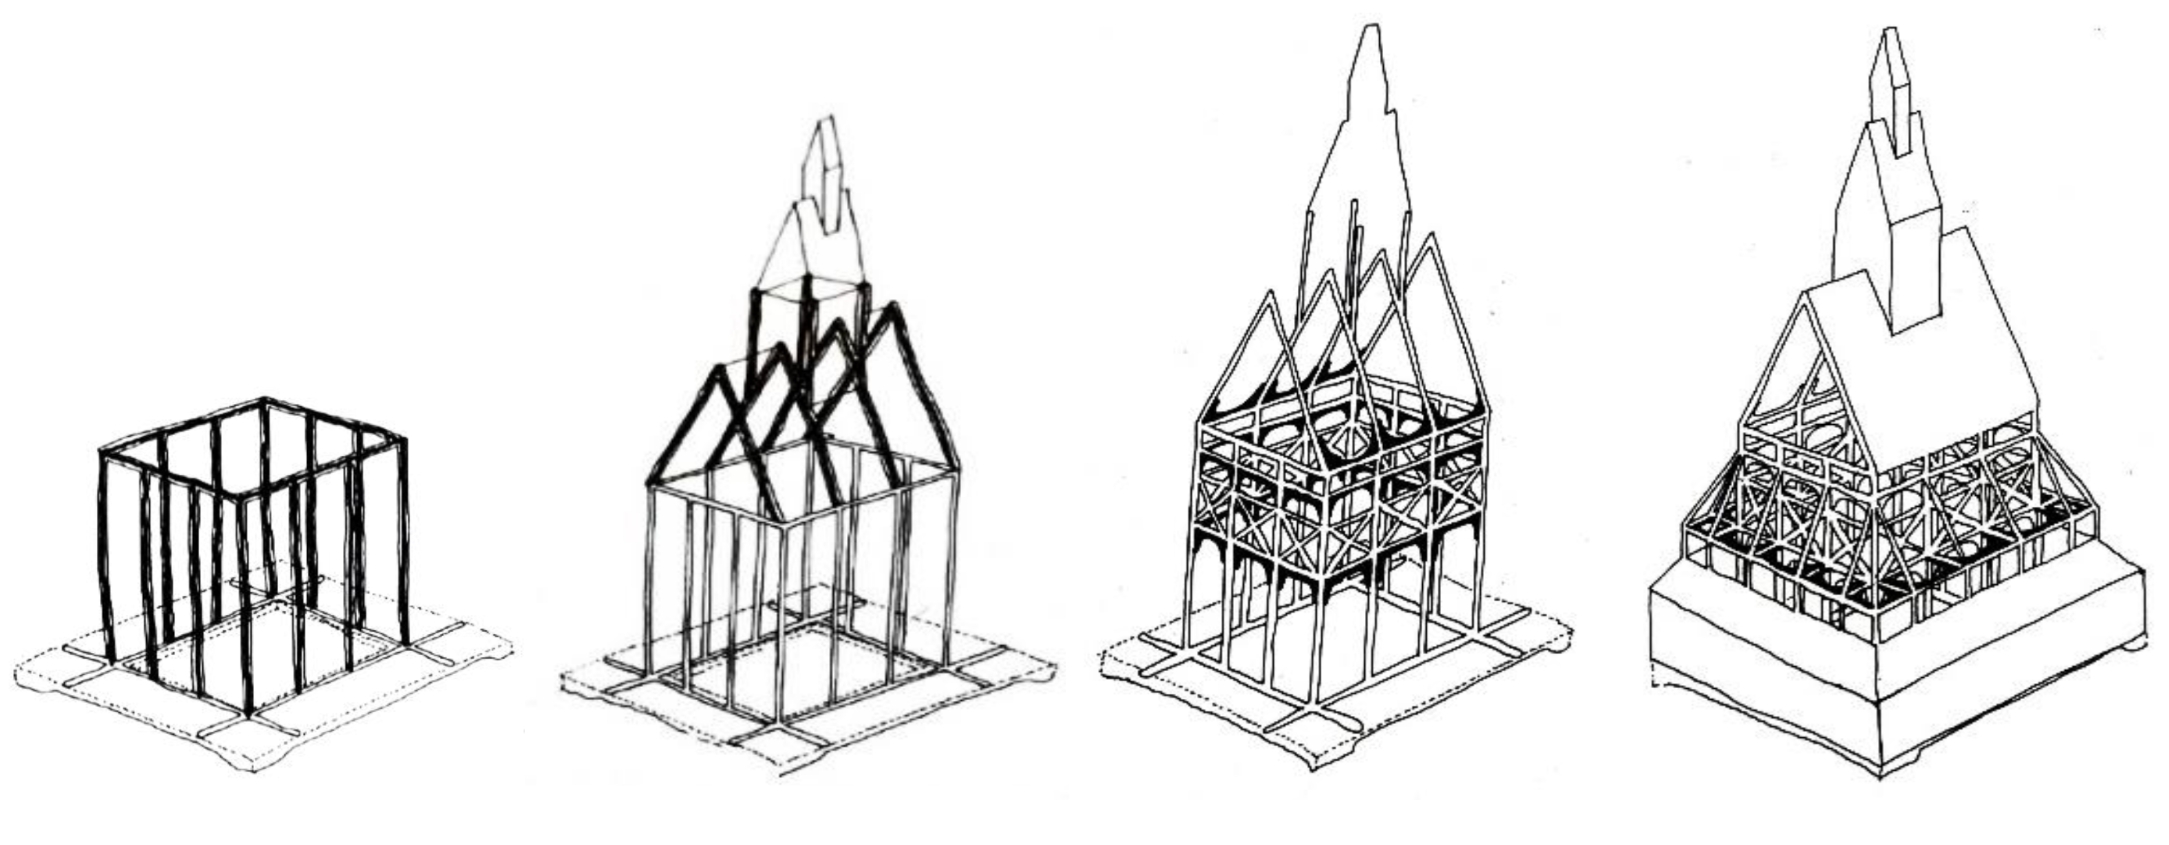 bouwfasen staafkerk borgund type